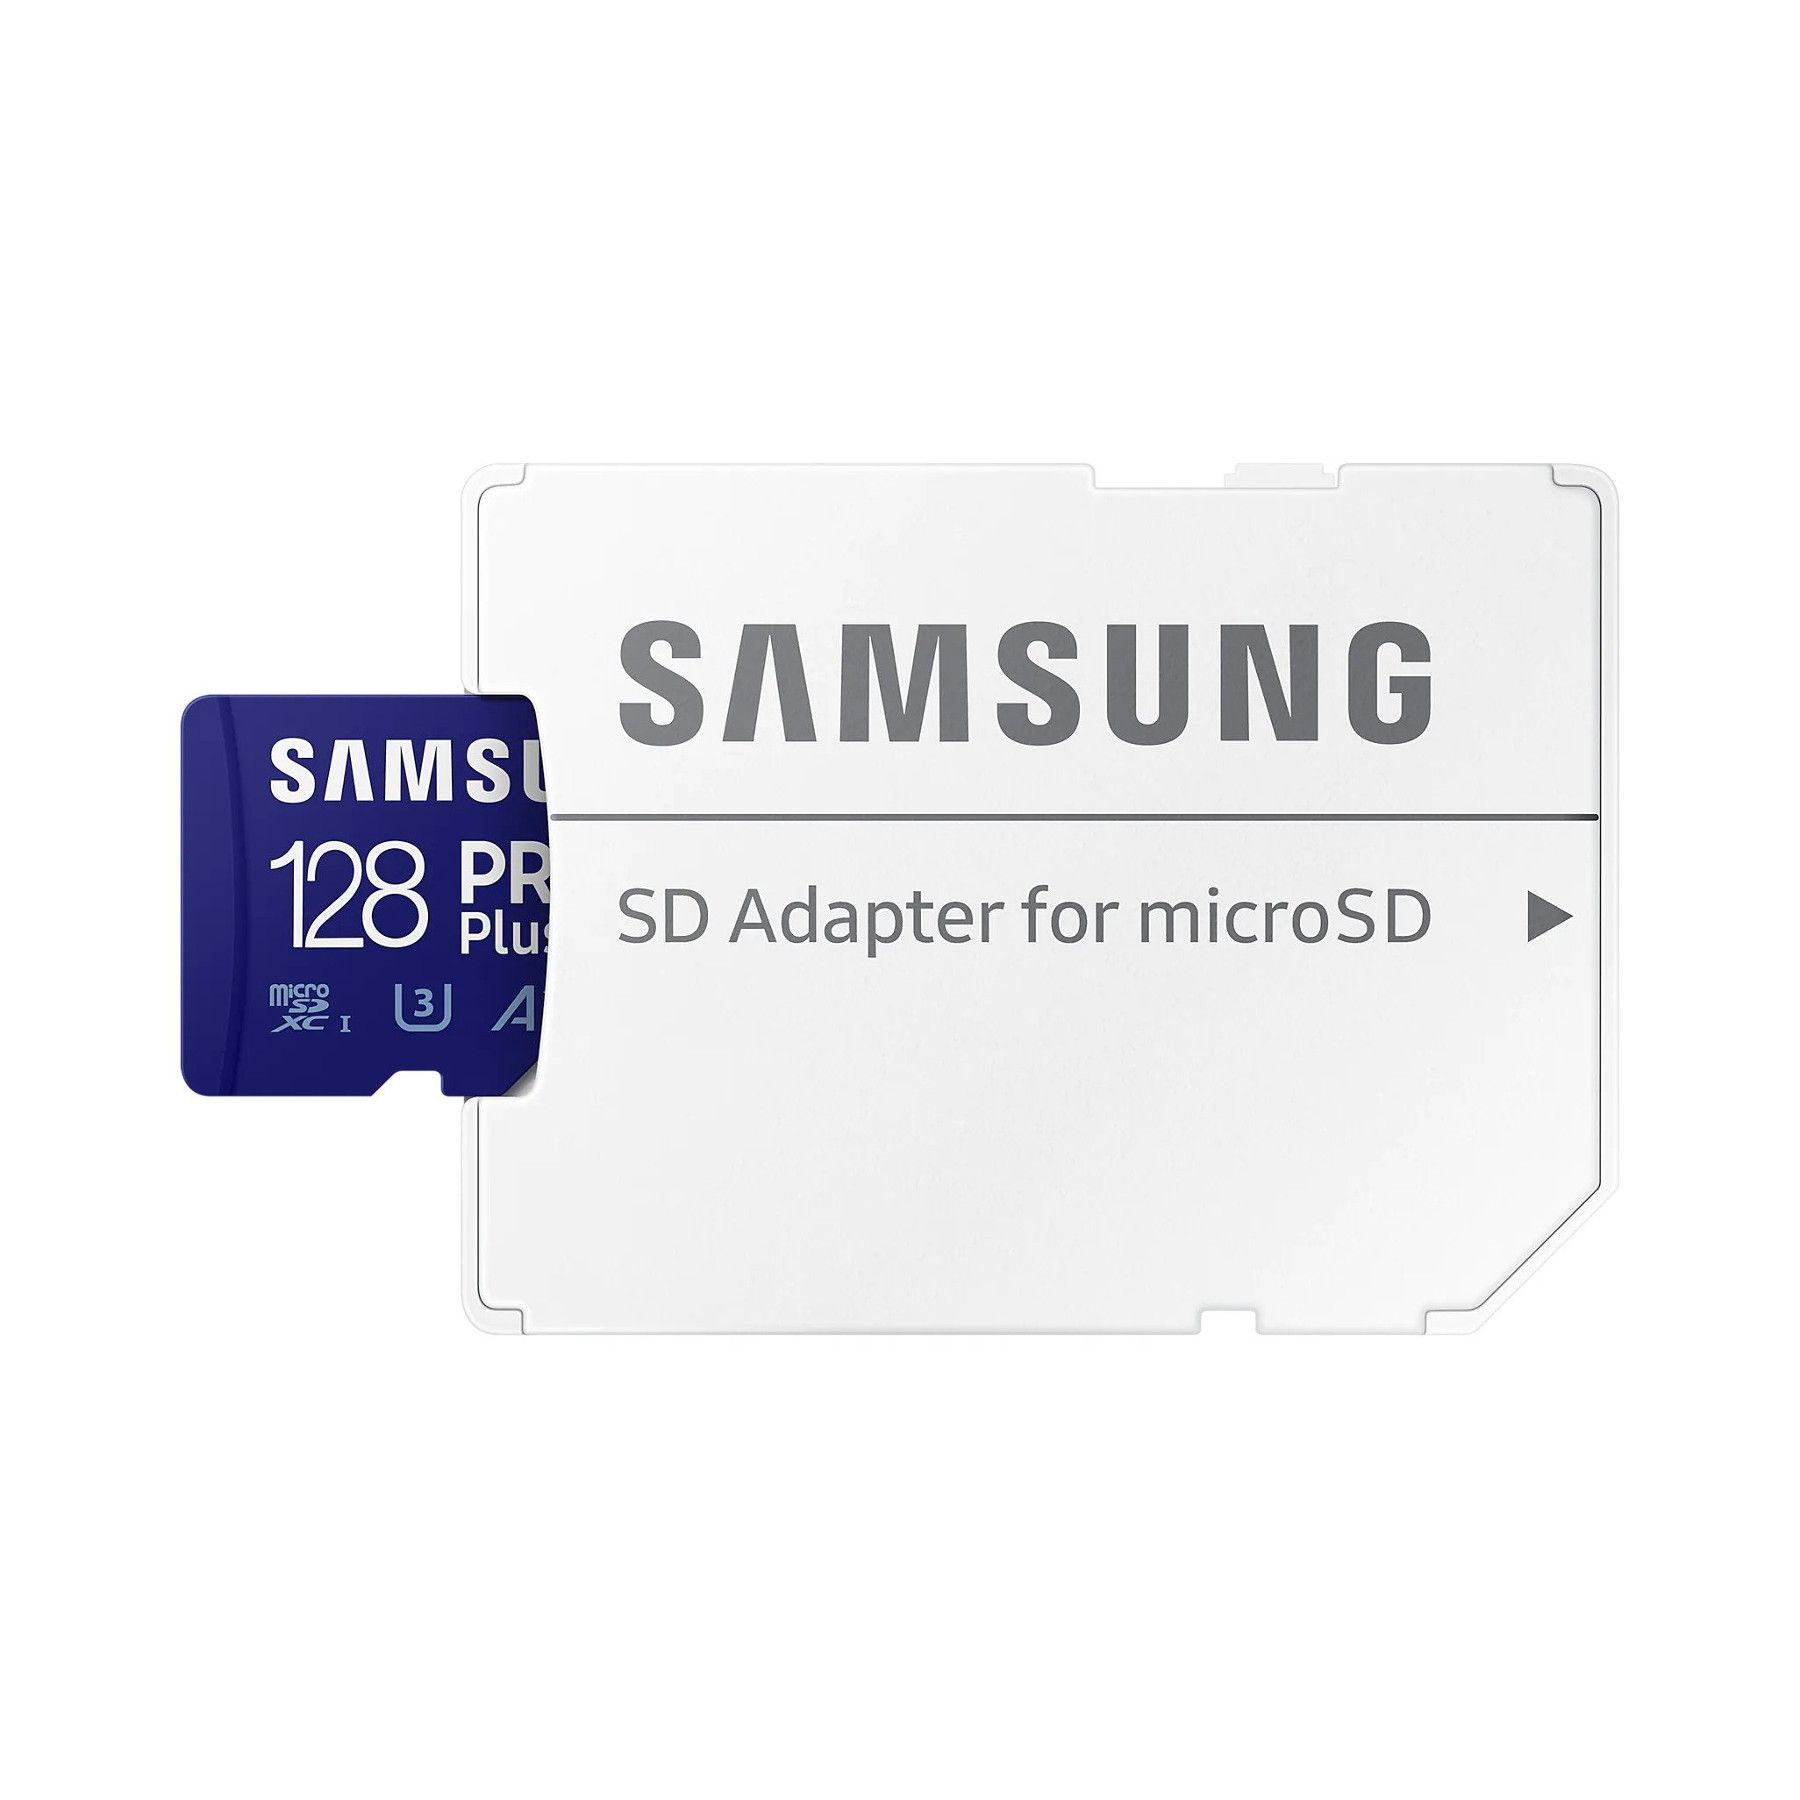 Samsung Micro SDXC Pro+ 128GB